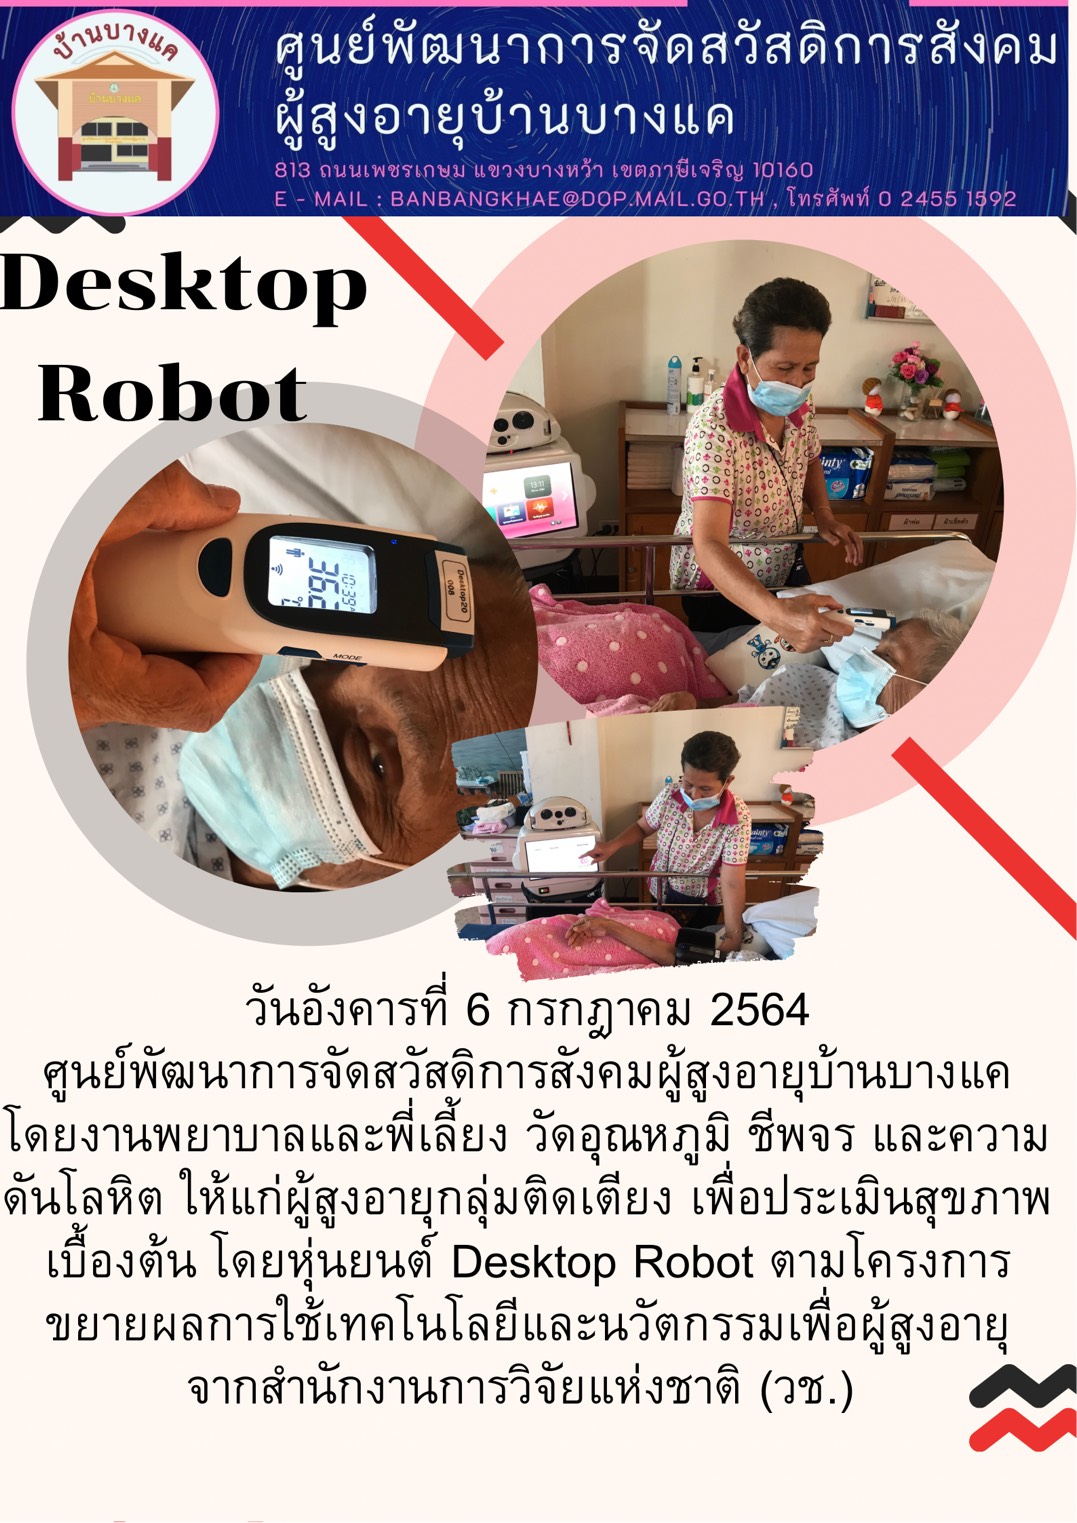 หุ่นยนต์ Desktop Robot ตามโครงการ การขยายผลการใช้เทคโนโลยีและนวัตกรรมเพื่อผู้สูงอายุ ของสำนักงานการวิจัยแห่งชาติ (วช.)